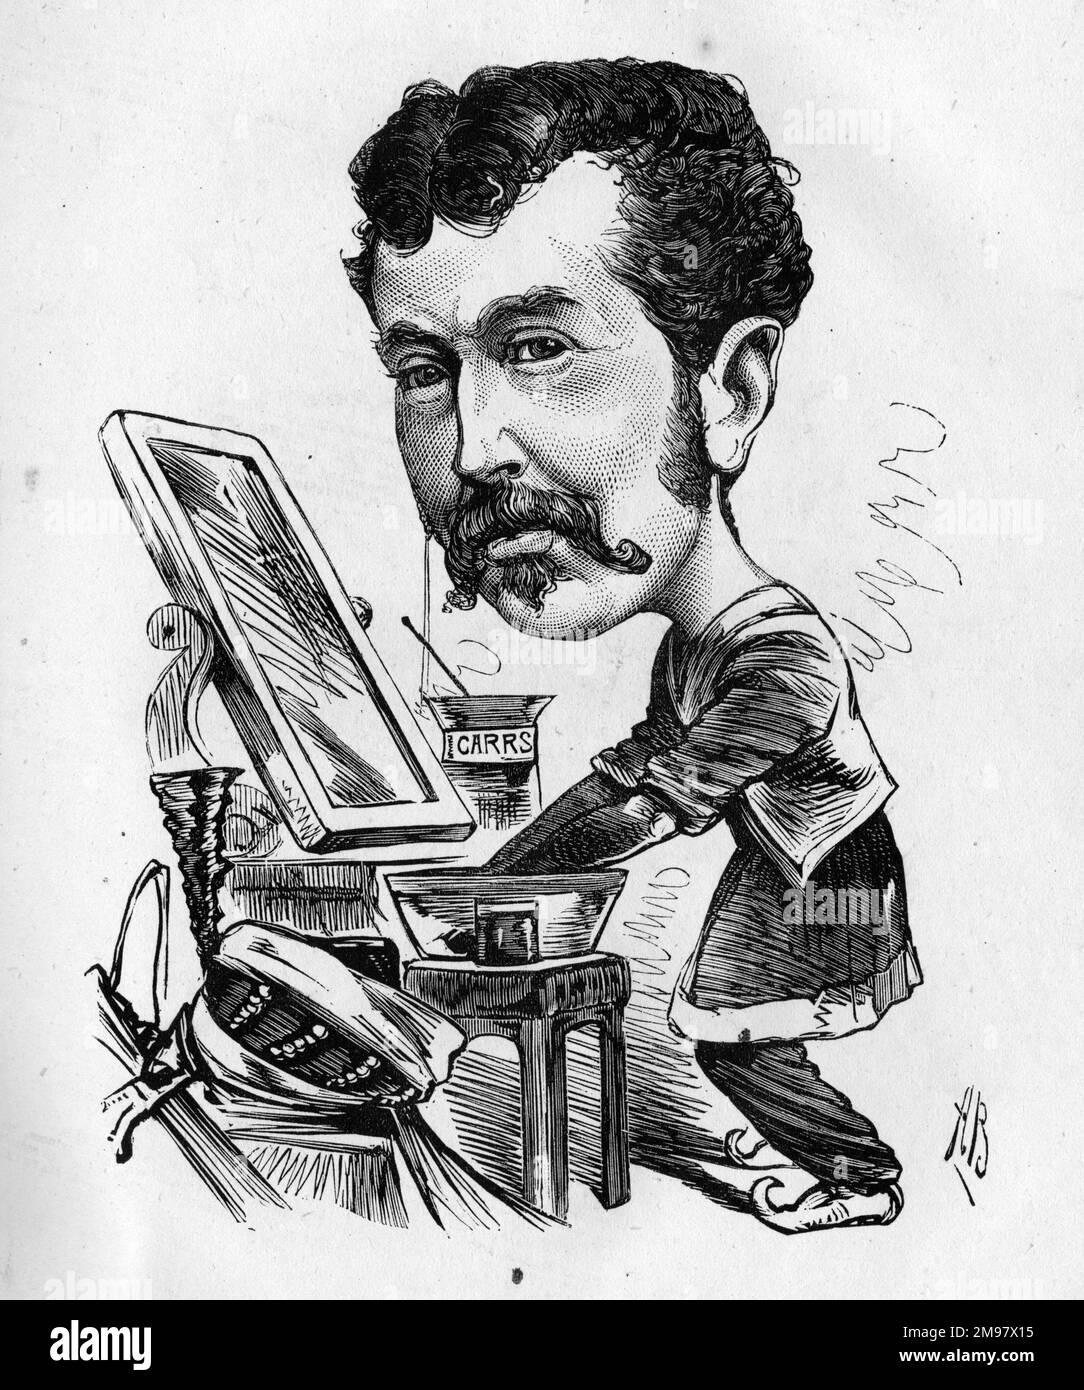 Cartone animato di Charles Lickfold Warner (1846-1909), attore inglese, visto qui prepararsi nel suo spogliatoio. Indossare la pittura di guerra. Foto Stock